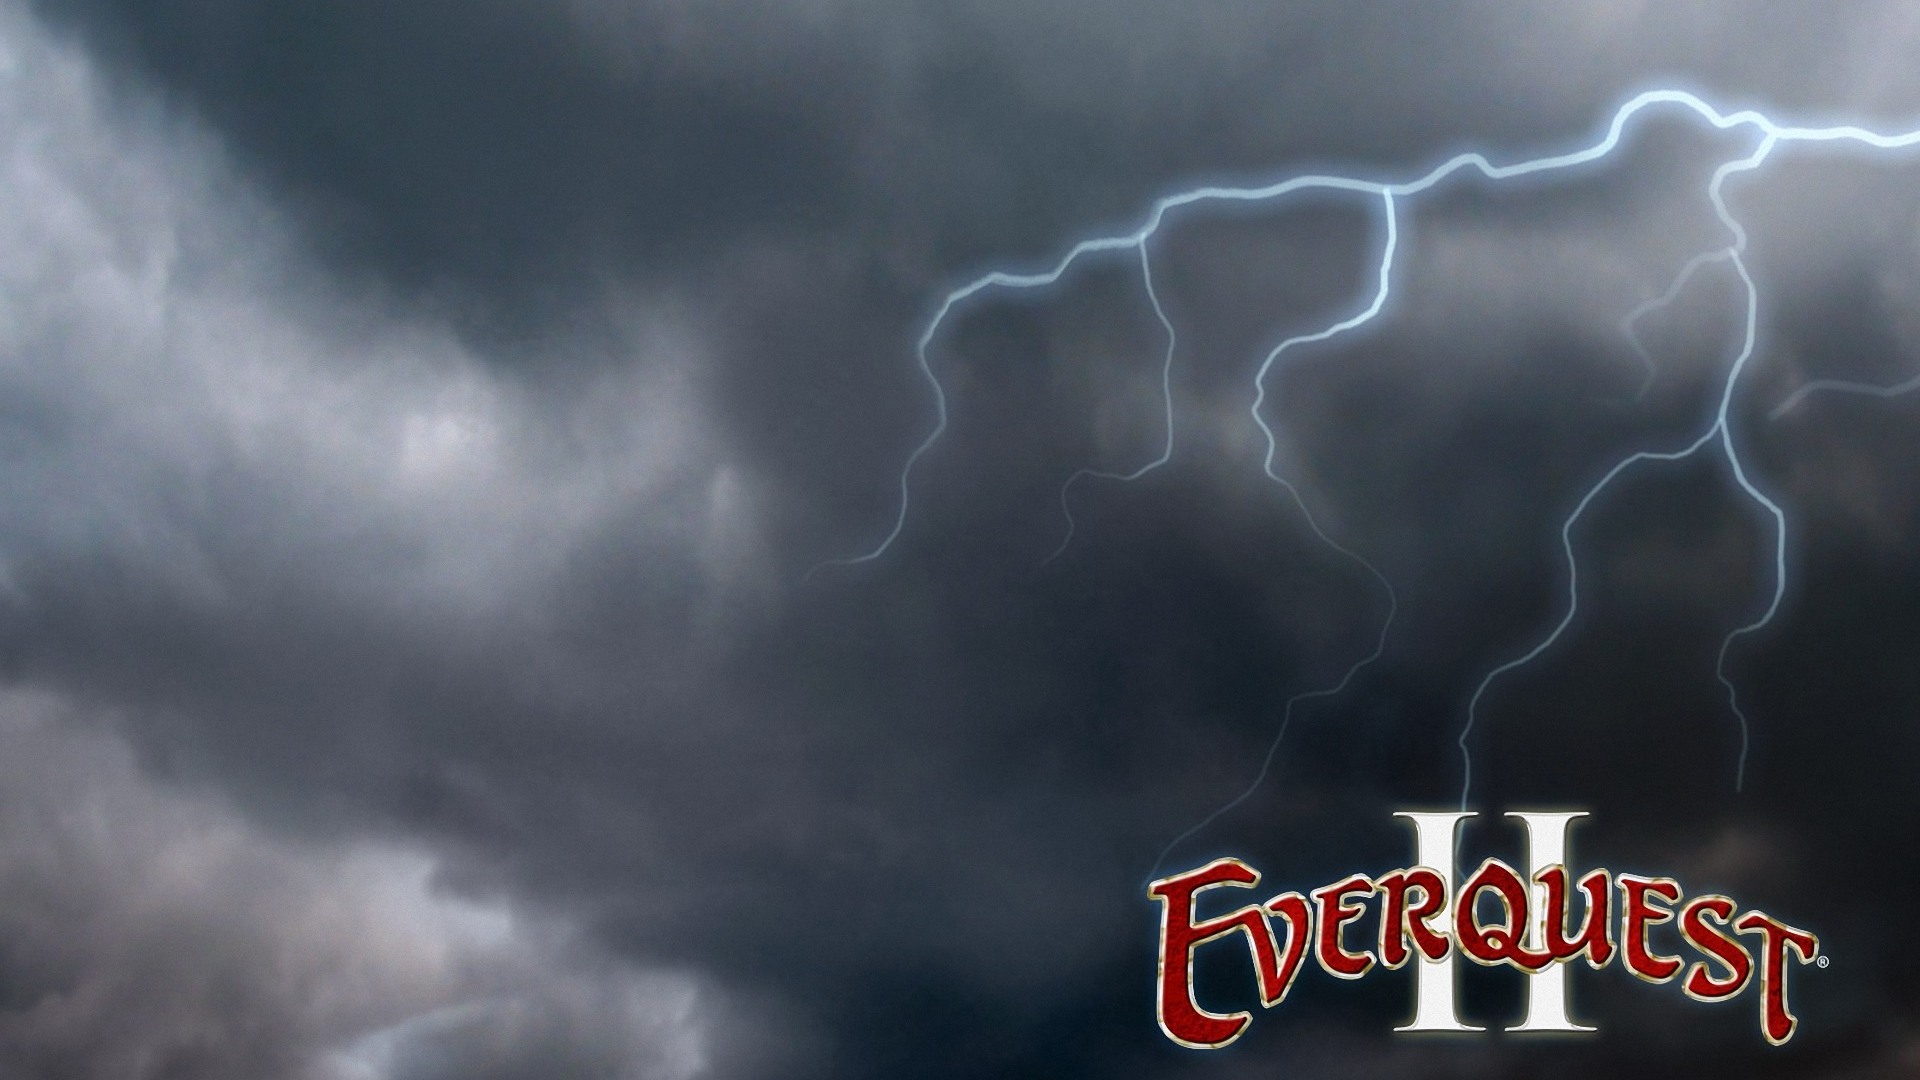 Everquest Lightning Wallpaper